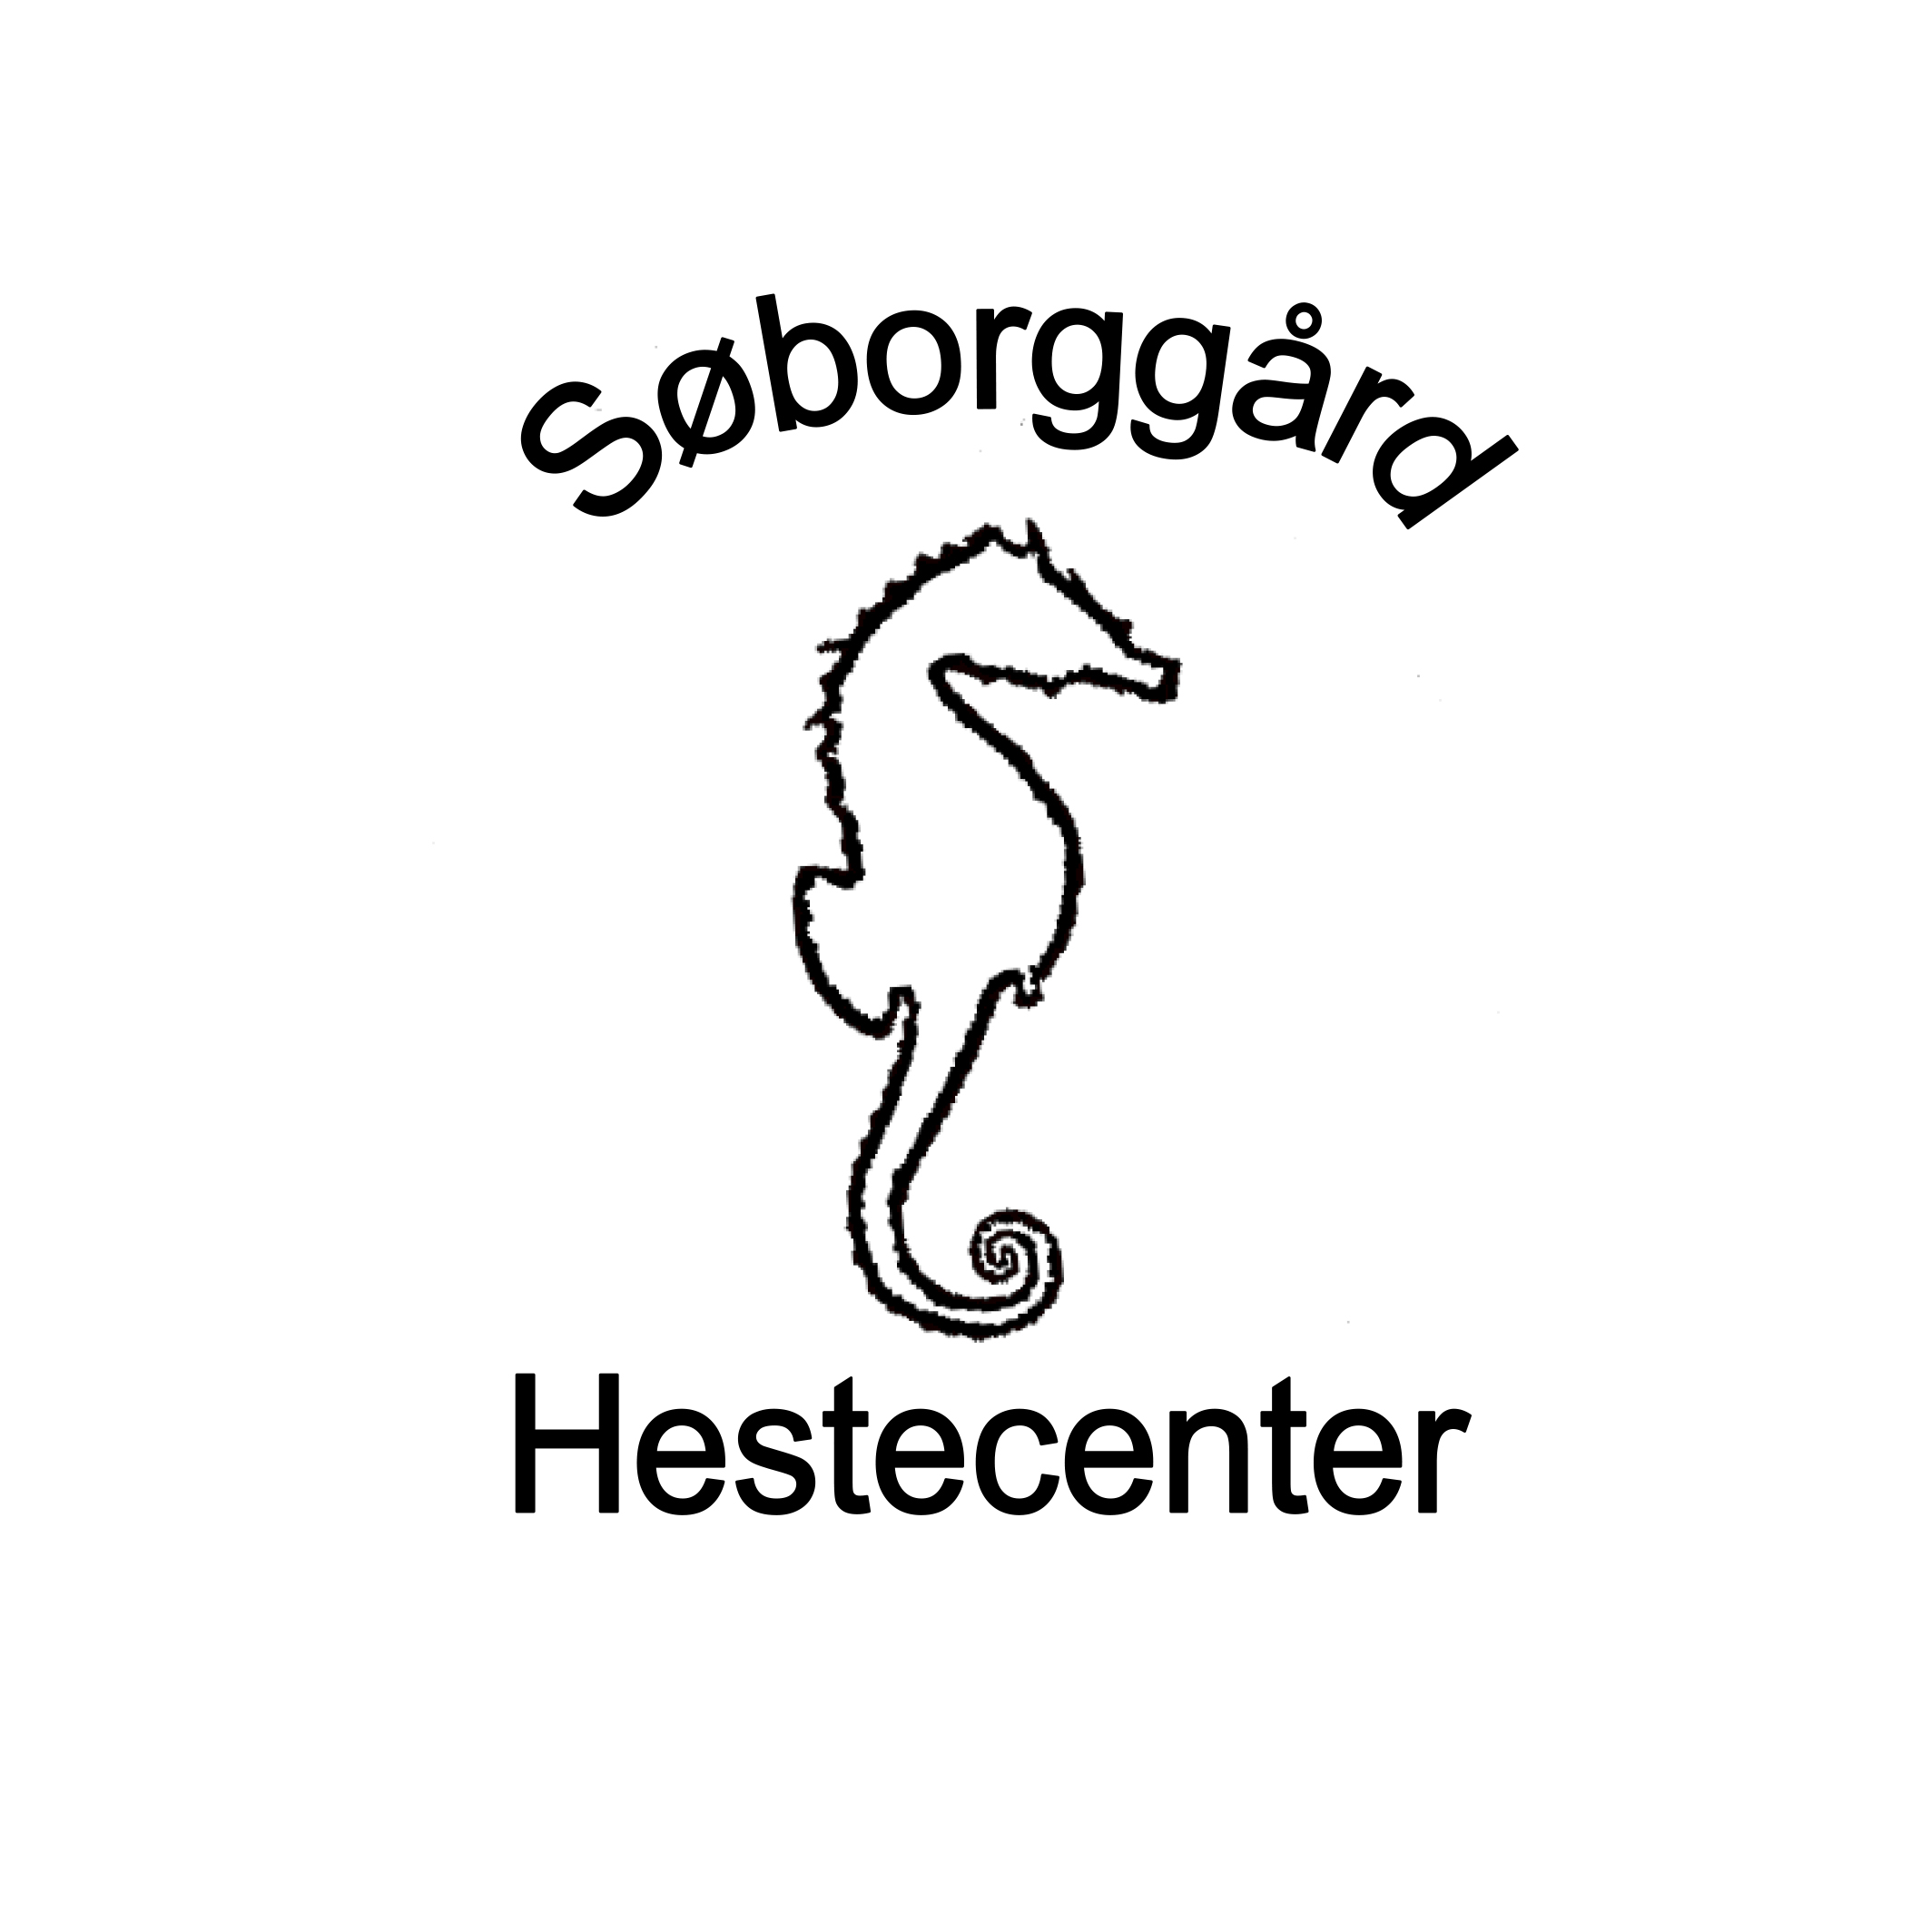 www.soeborggaard.com